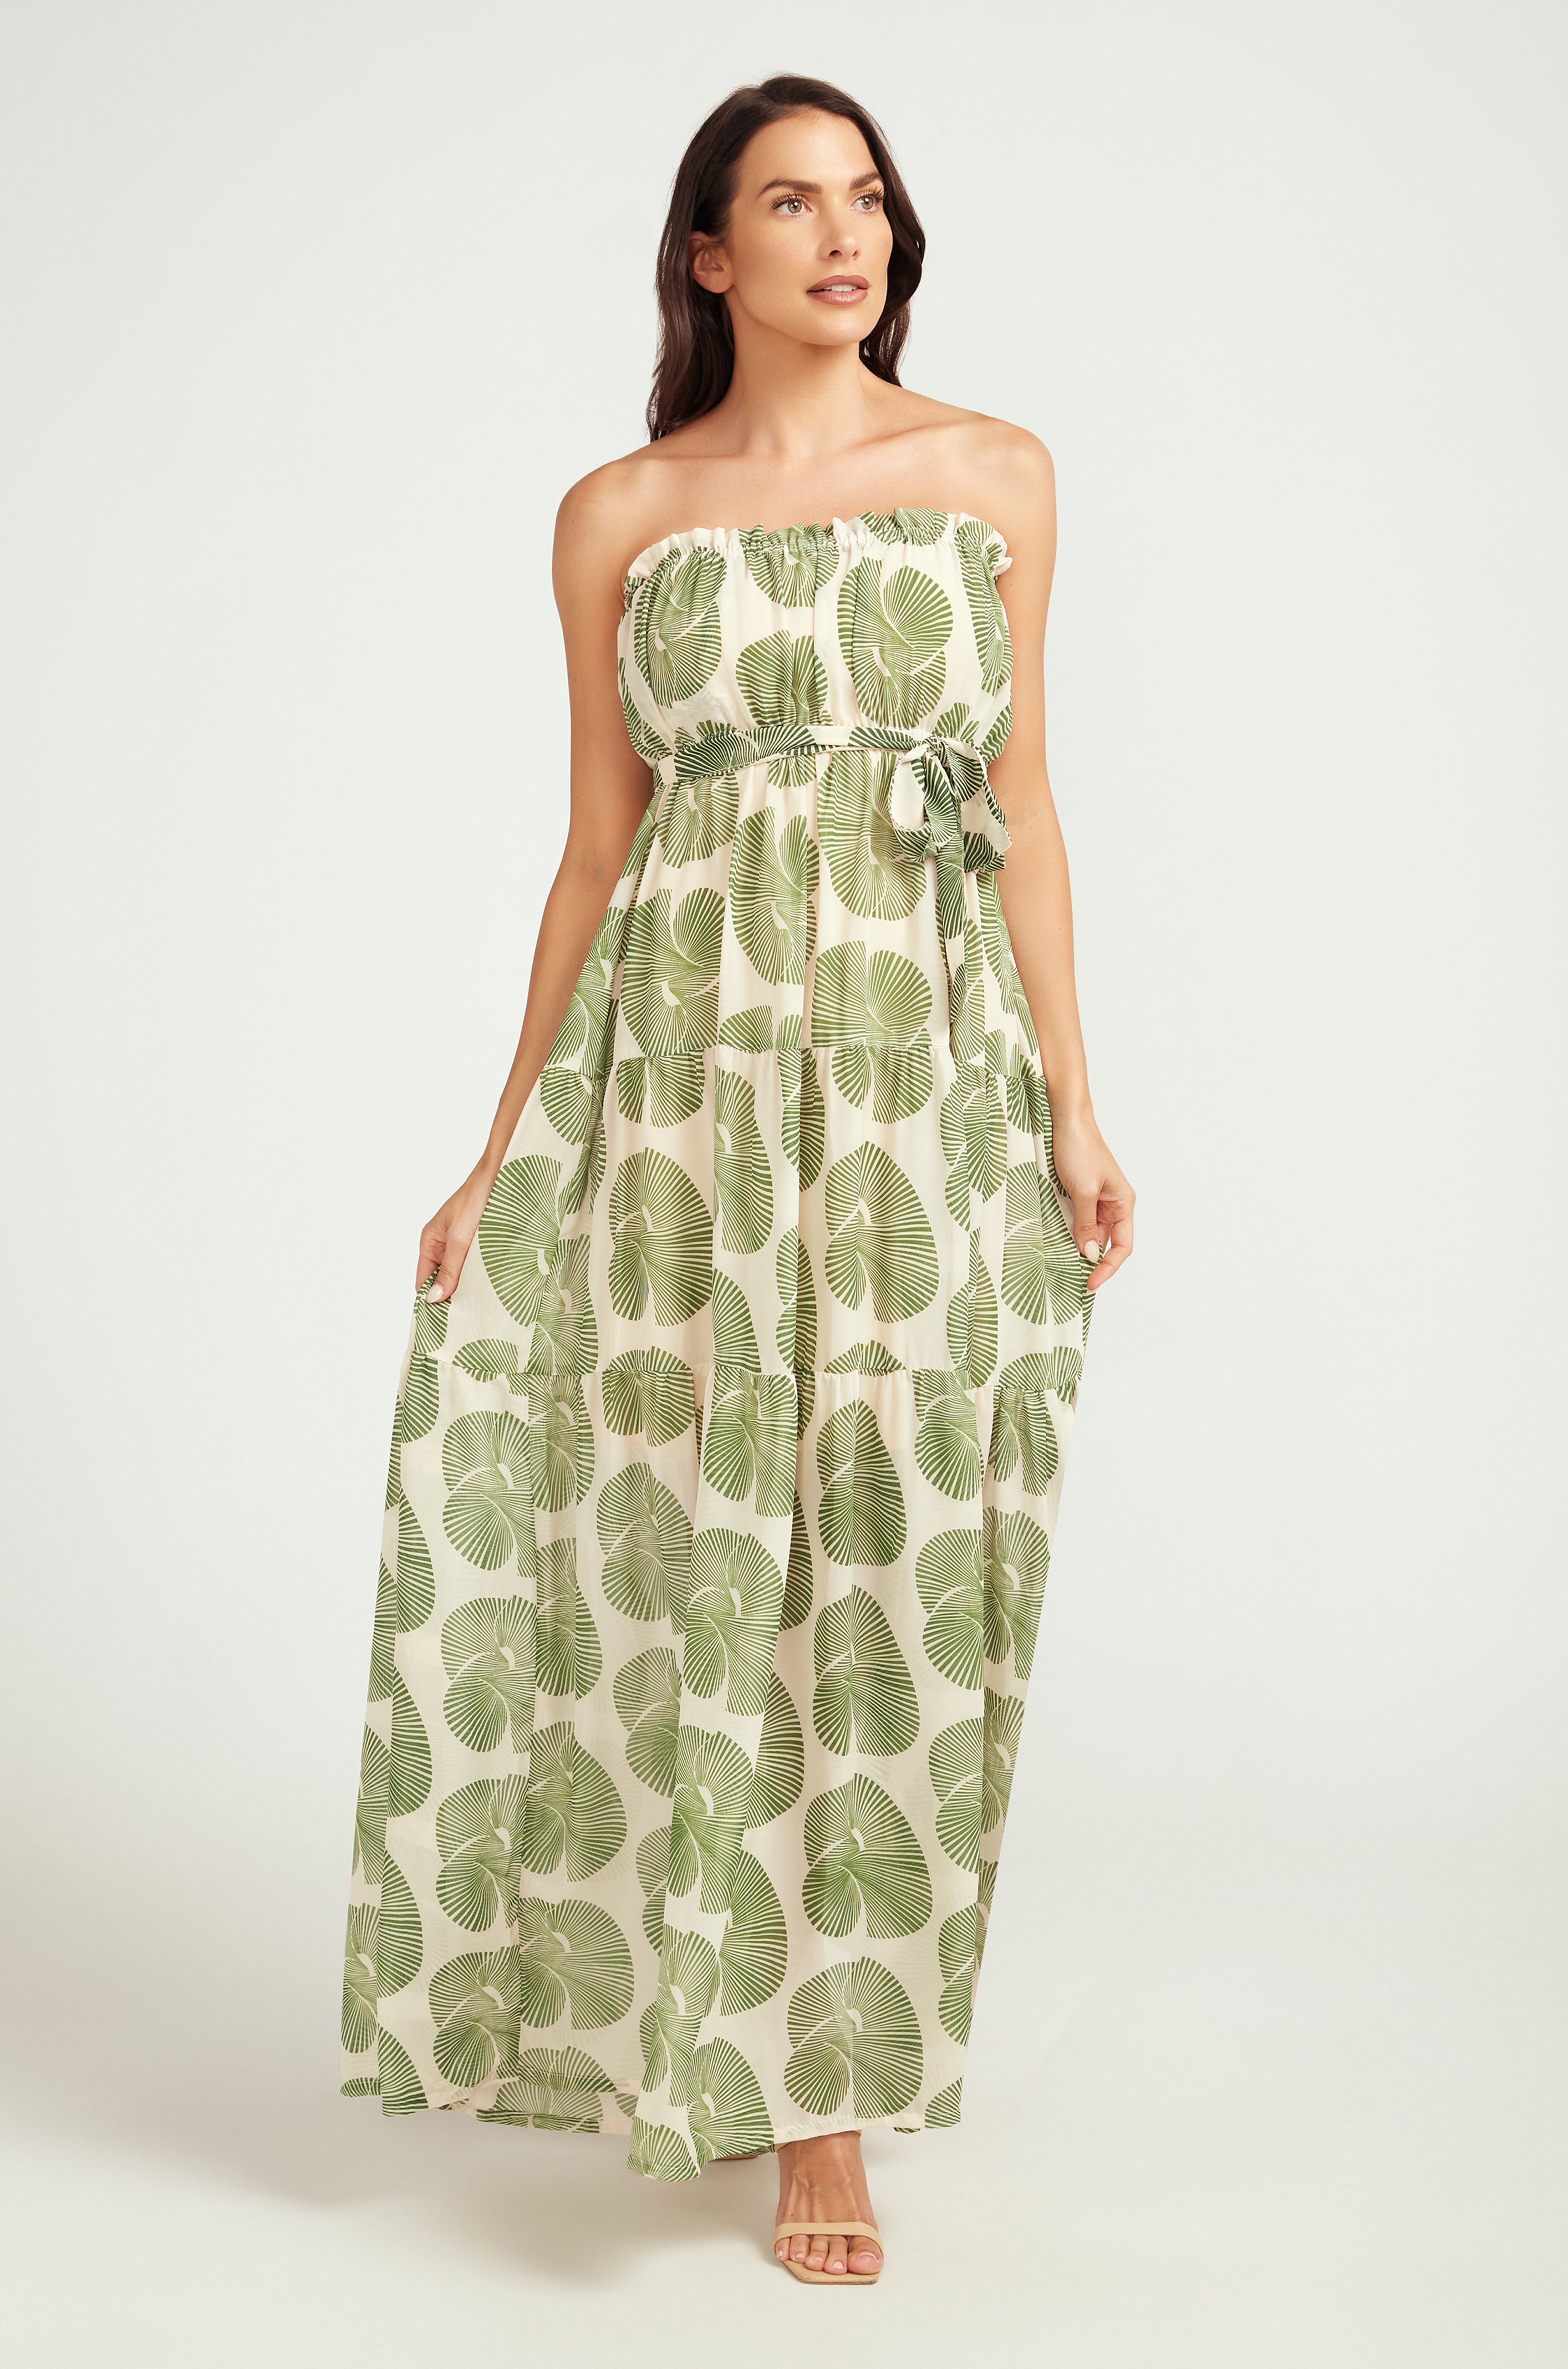 MAXI Tiered Dress / Green Fan Print